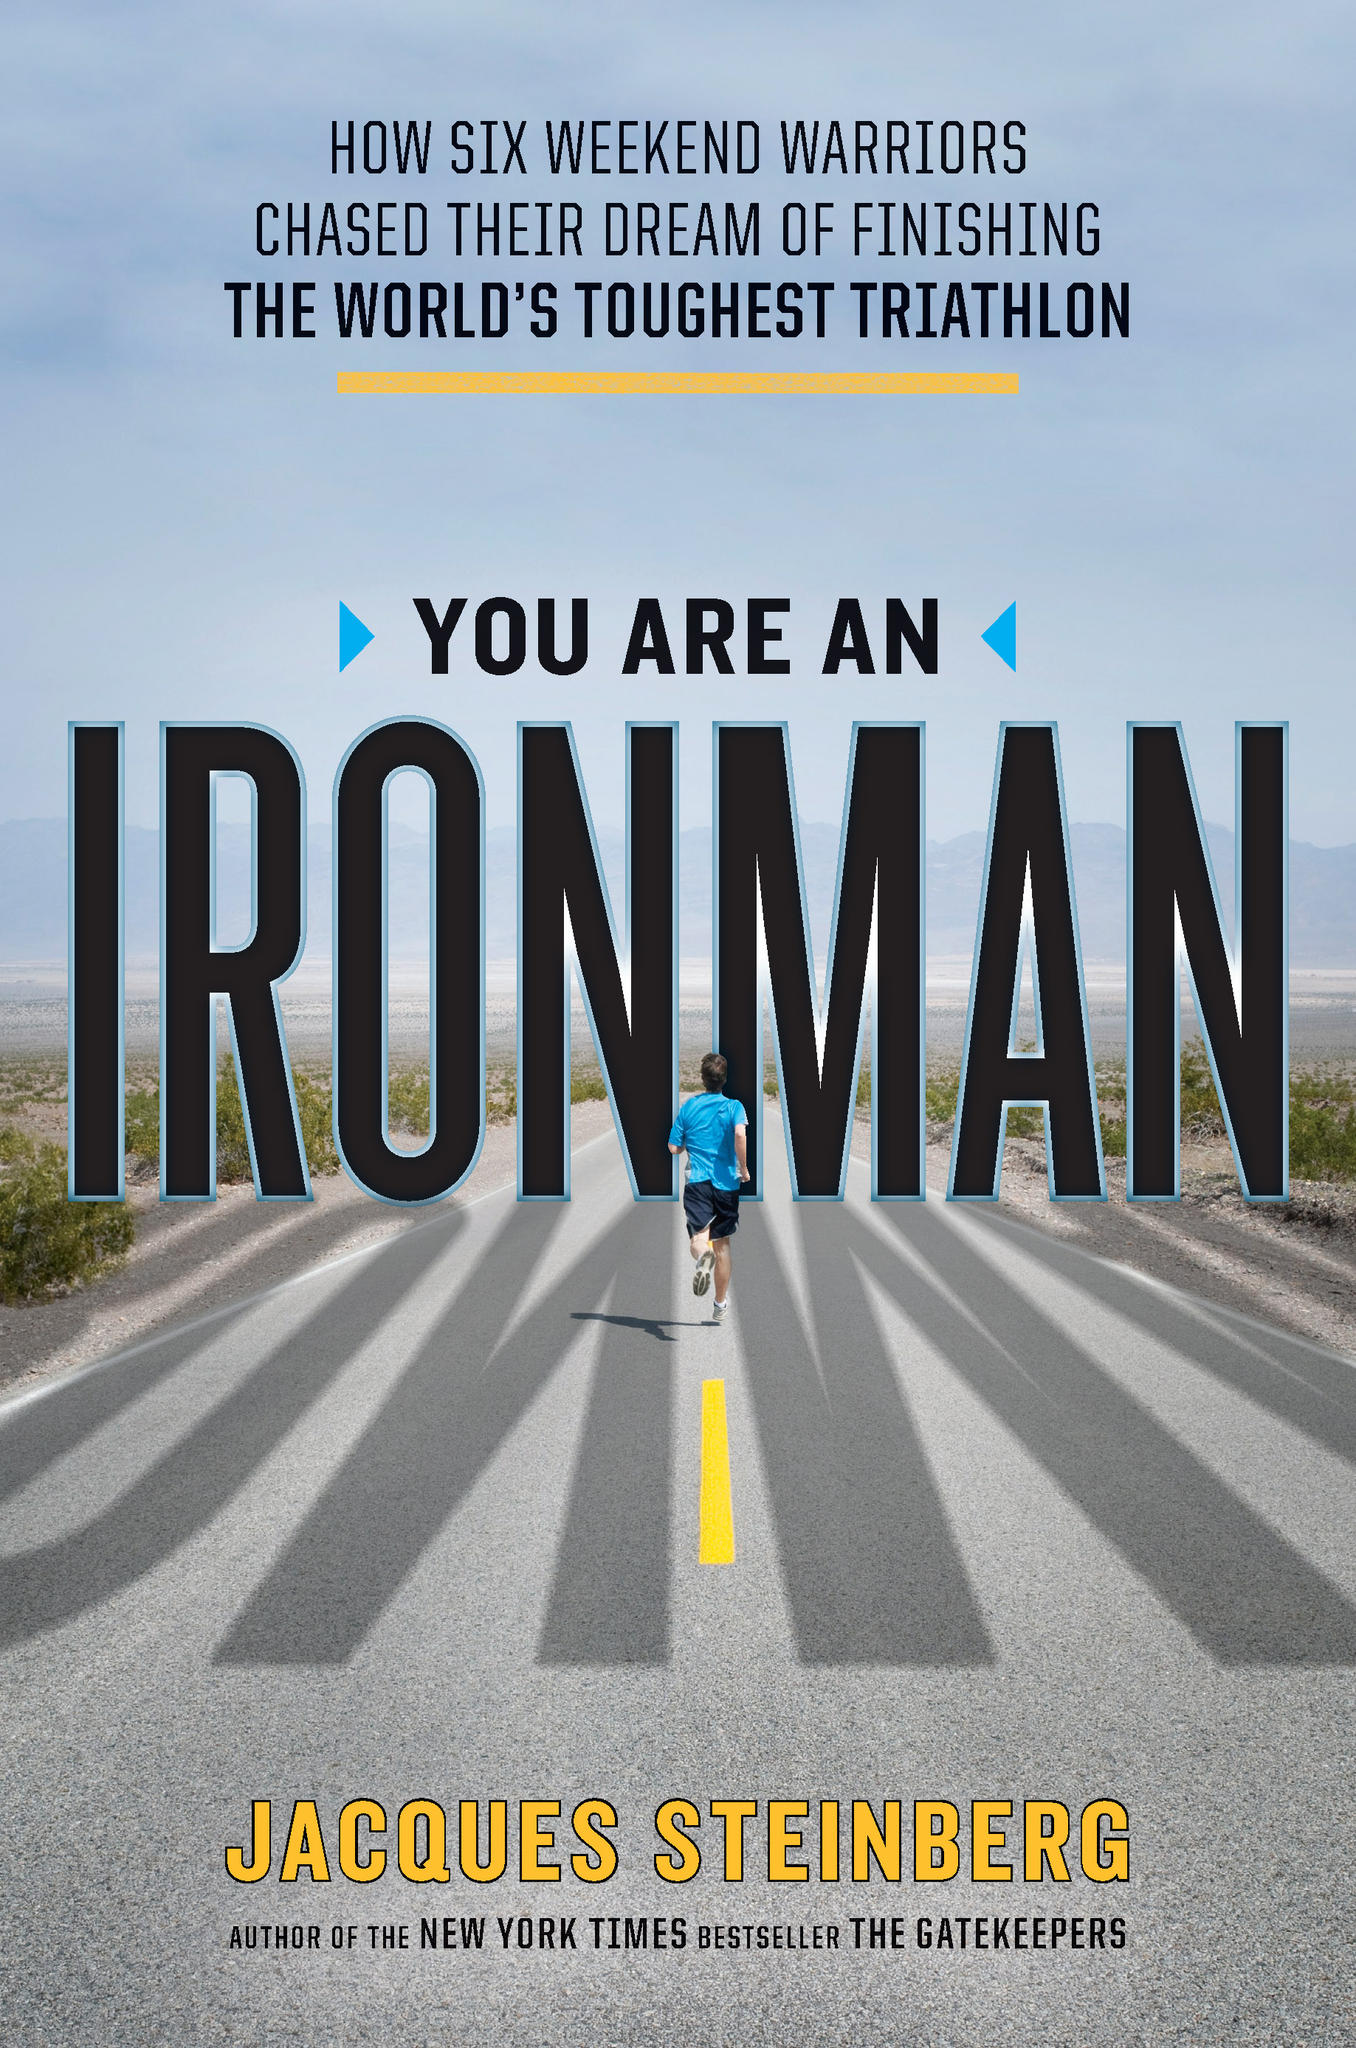 Iron Man Triathlon Quotes. QuotesGram